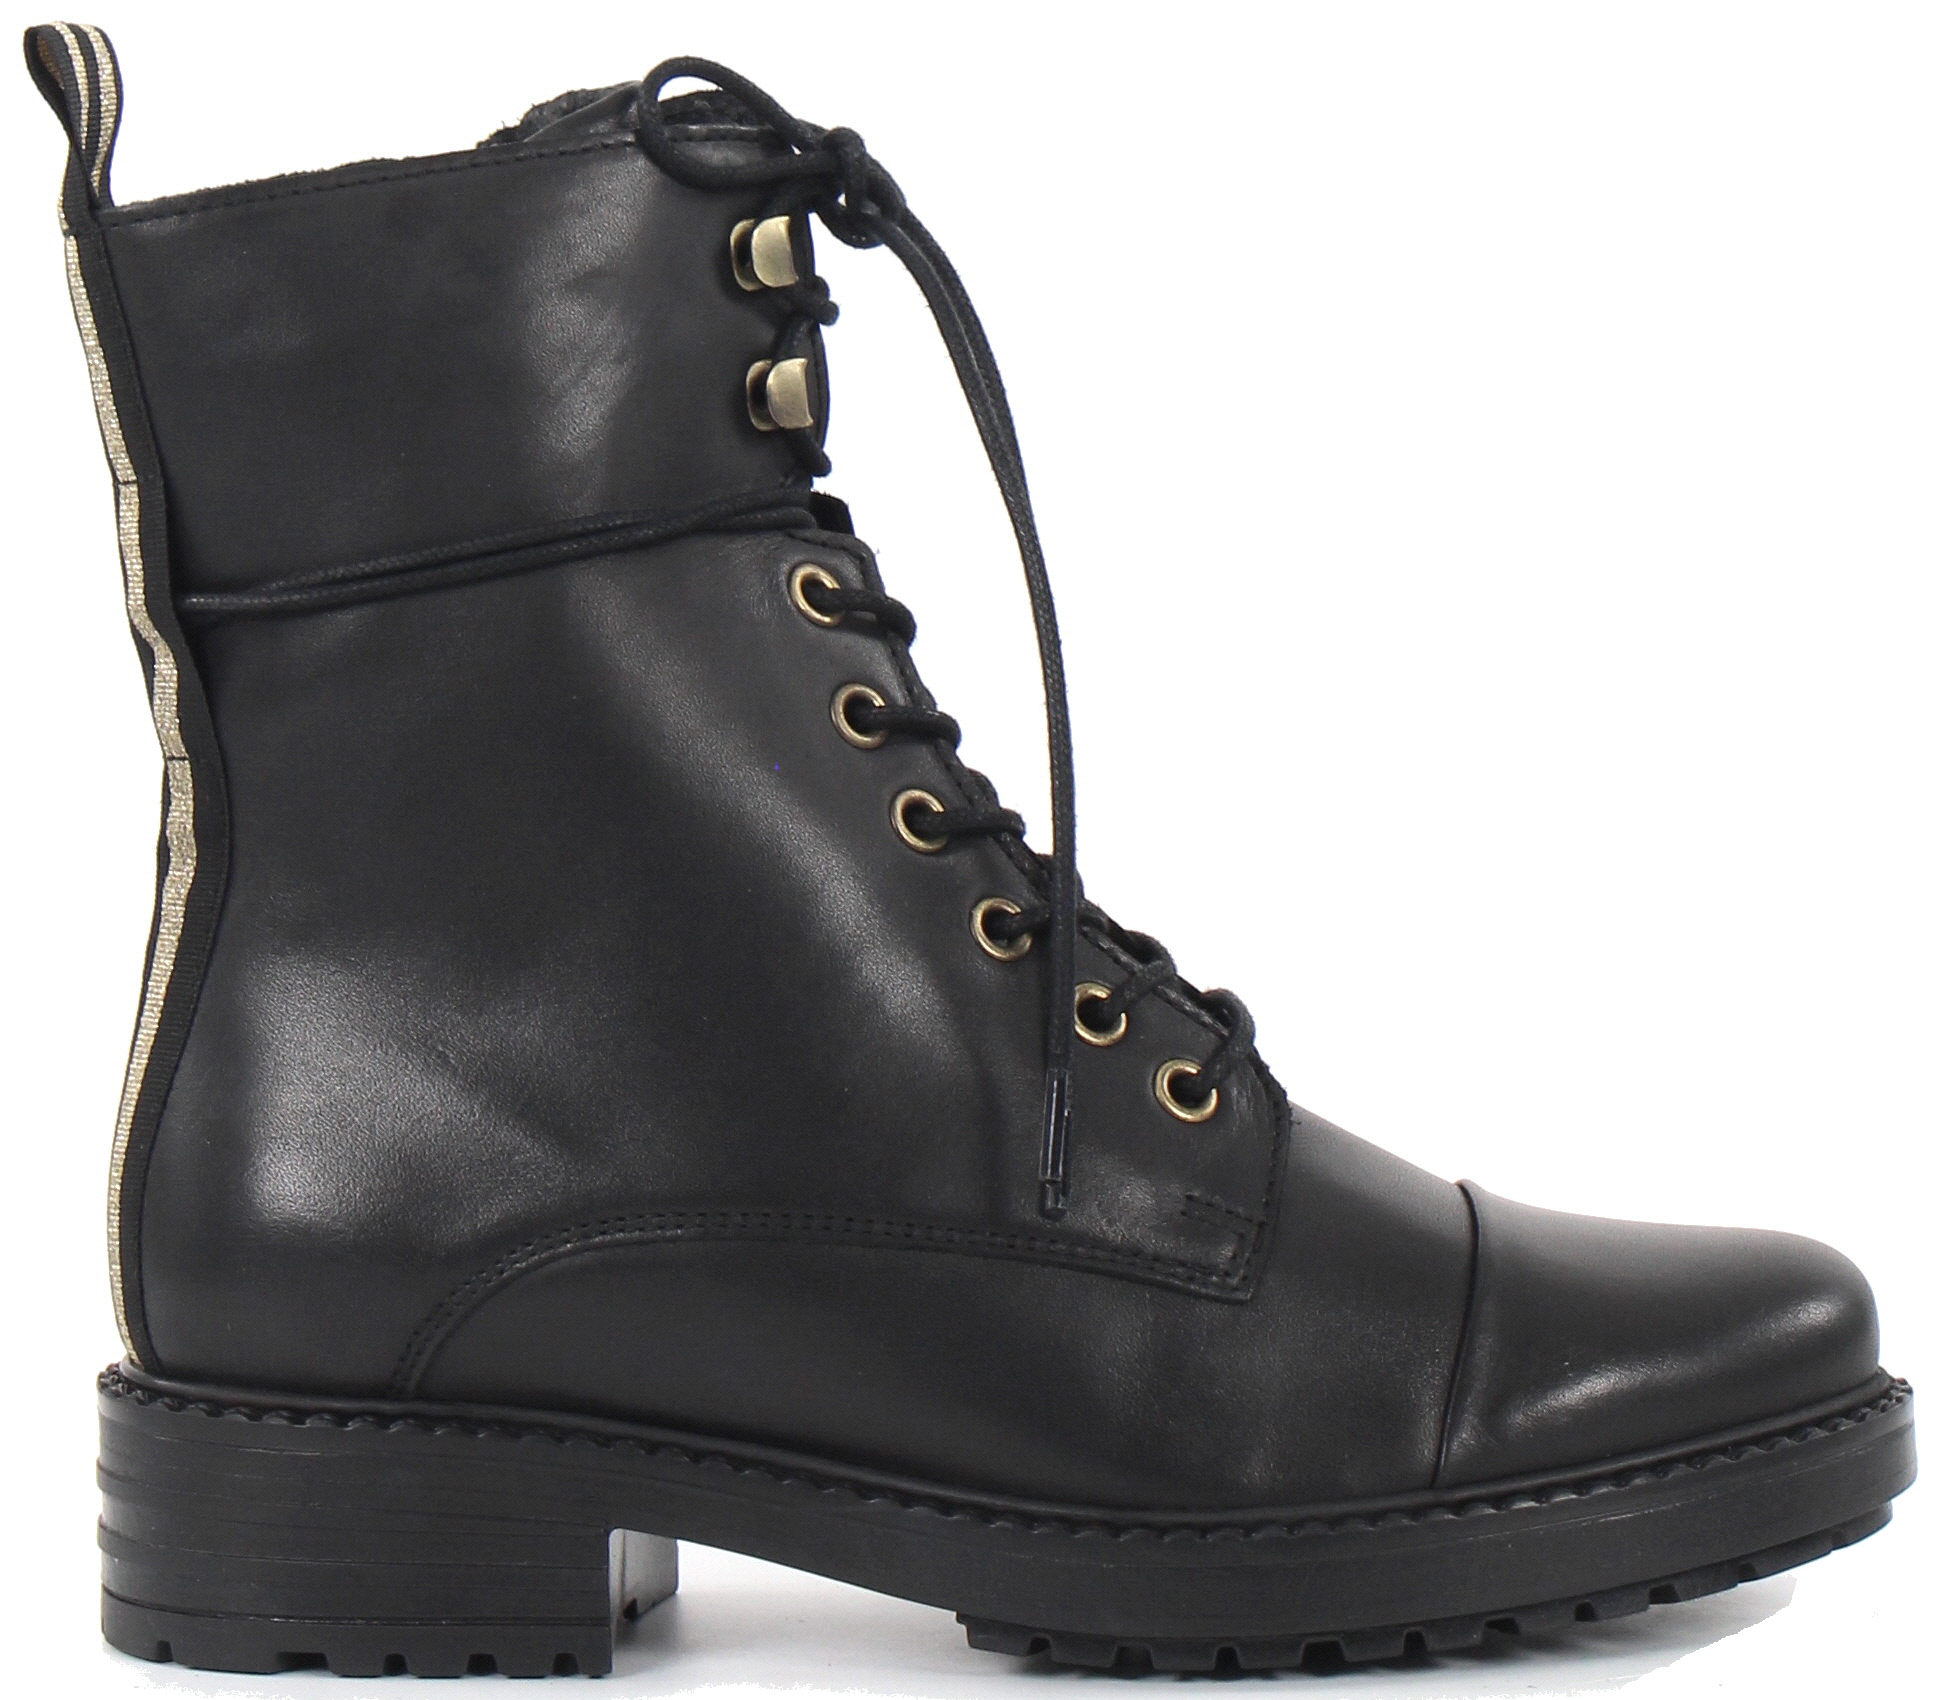 PS Poelman Ankle Boots 15472, Black/Gold - Stilettoshop.eu webstore